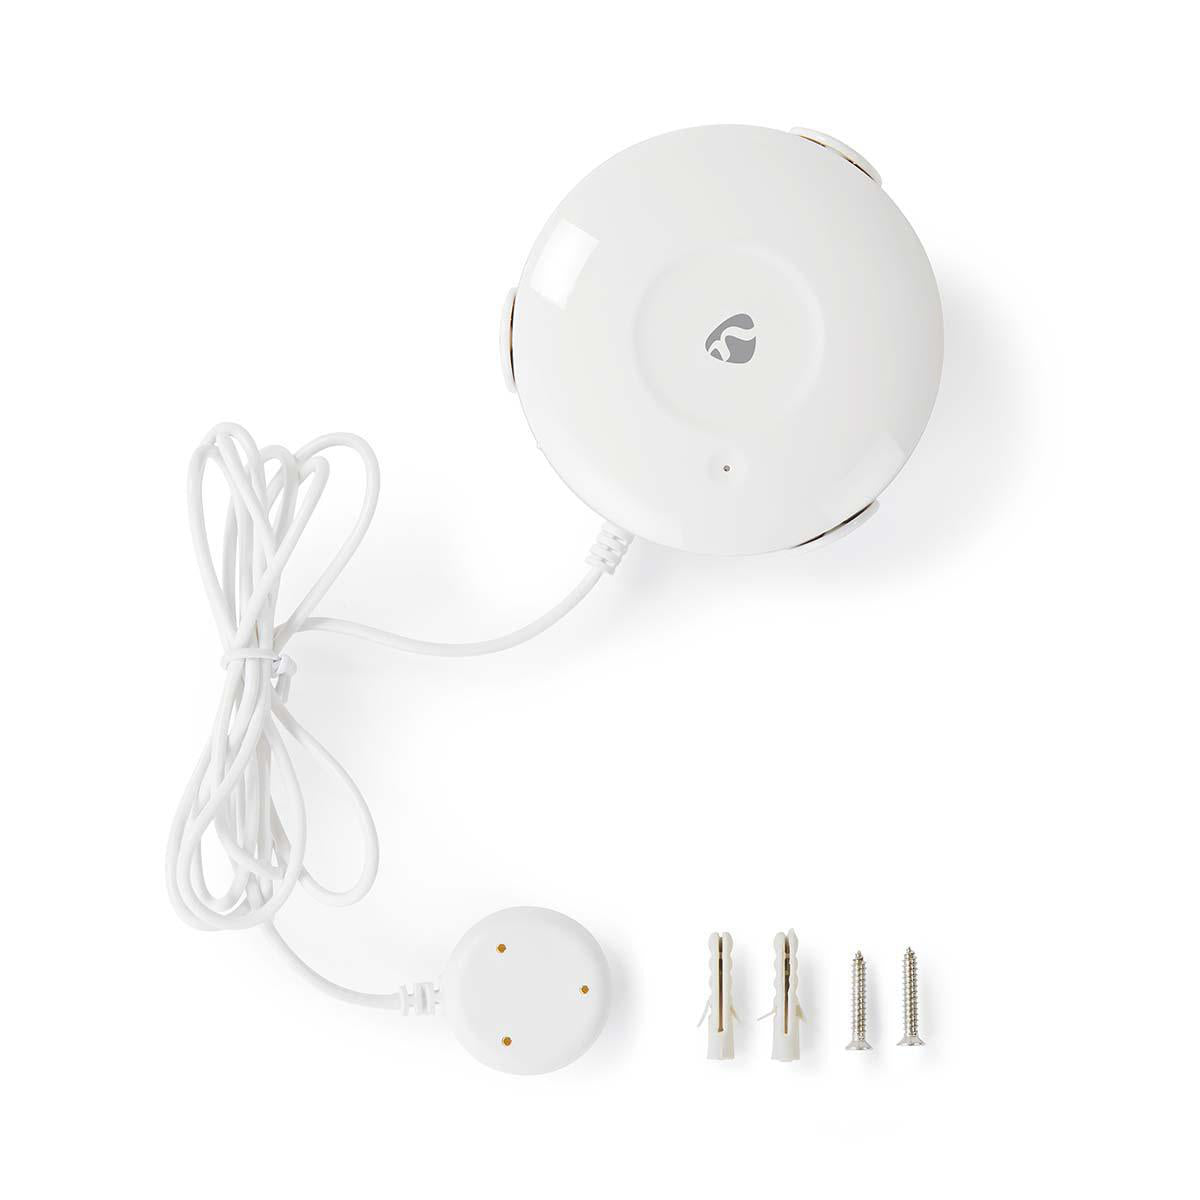 SmartLife Wassermelder Wi-Fi 50 dB weiss jetzt kaufen - Aktionskönig